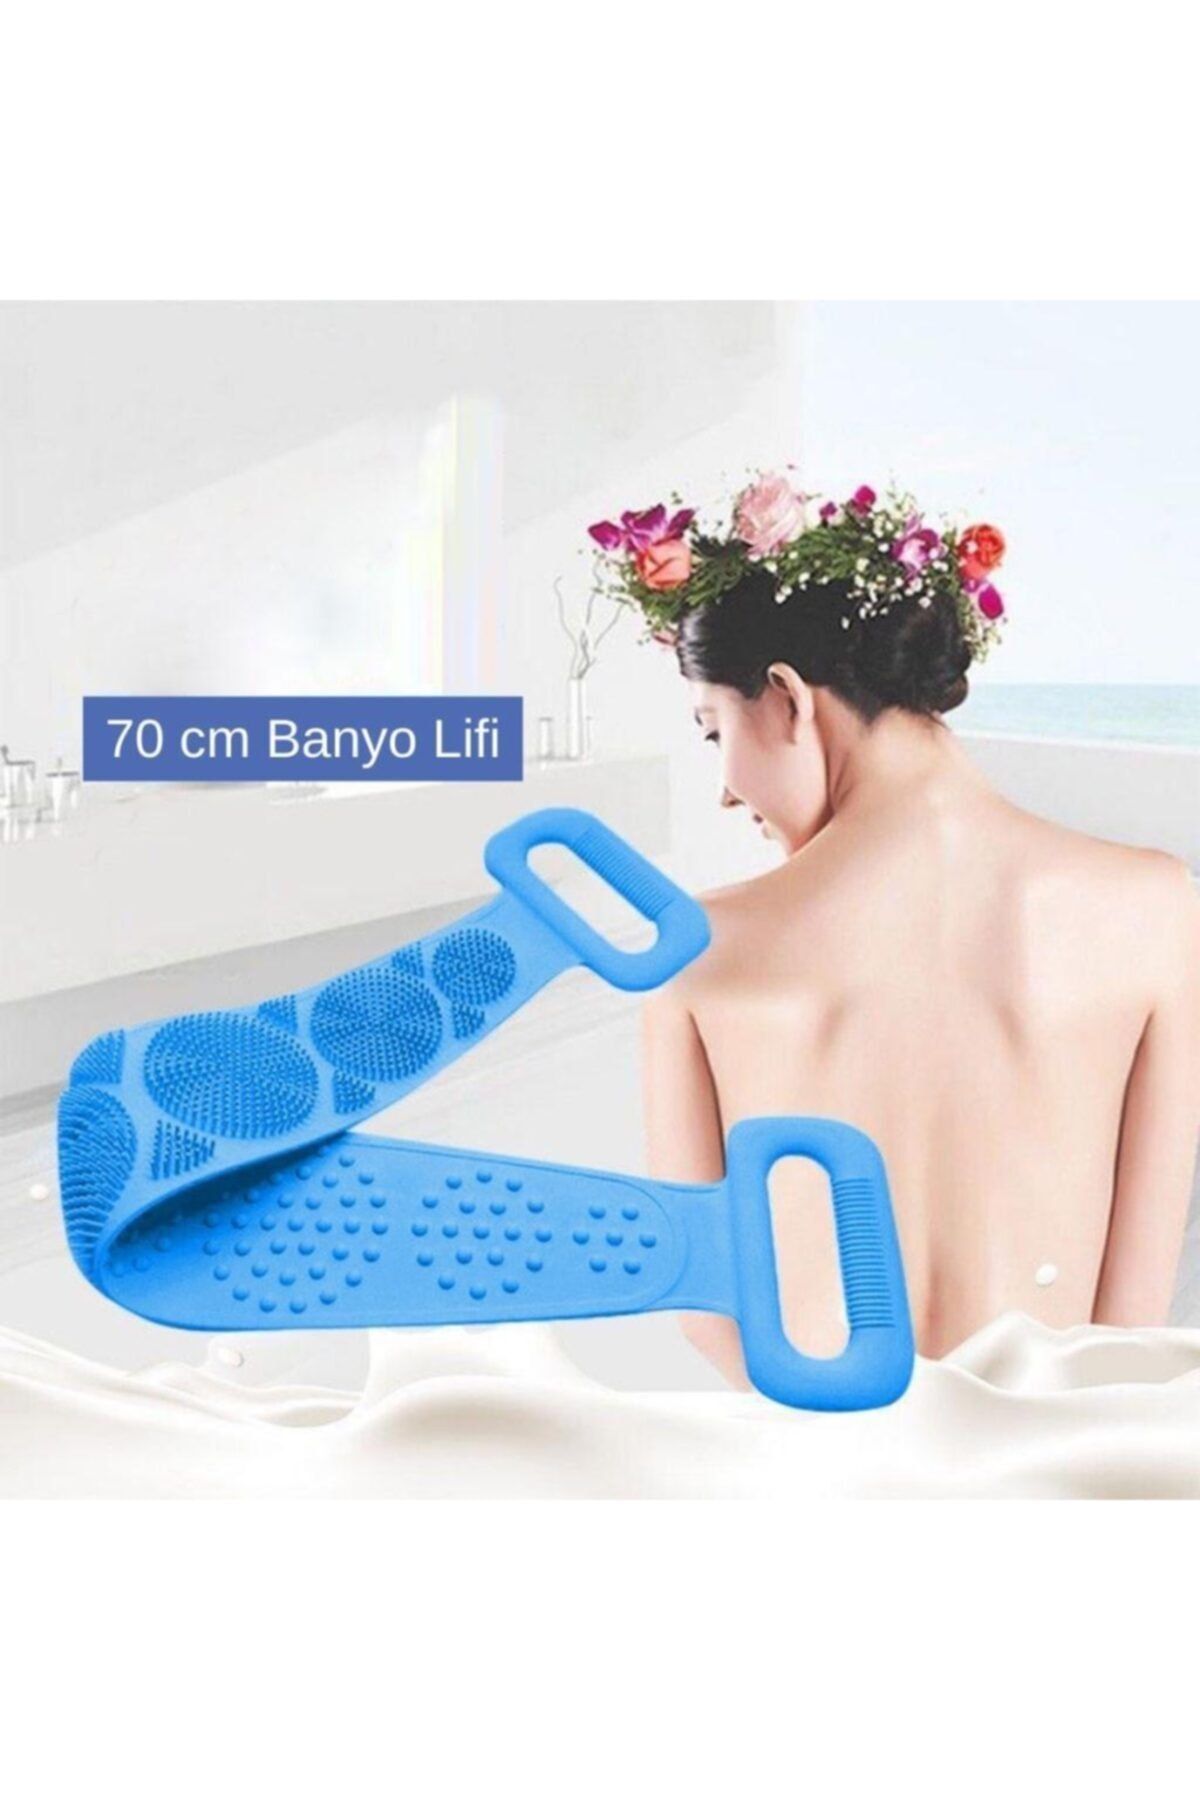 rennway Çift Taraflı Banyo Hamam Lifi Silikon Masajlı Yumuşak Duş Lifi Uzun Ömürlü Hazır Banyo Kesesi